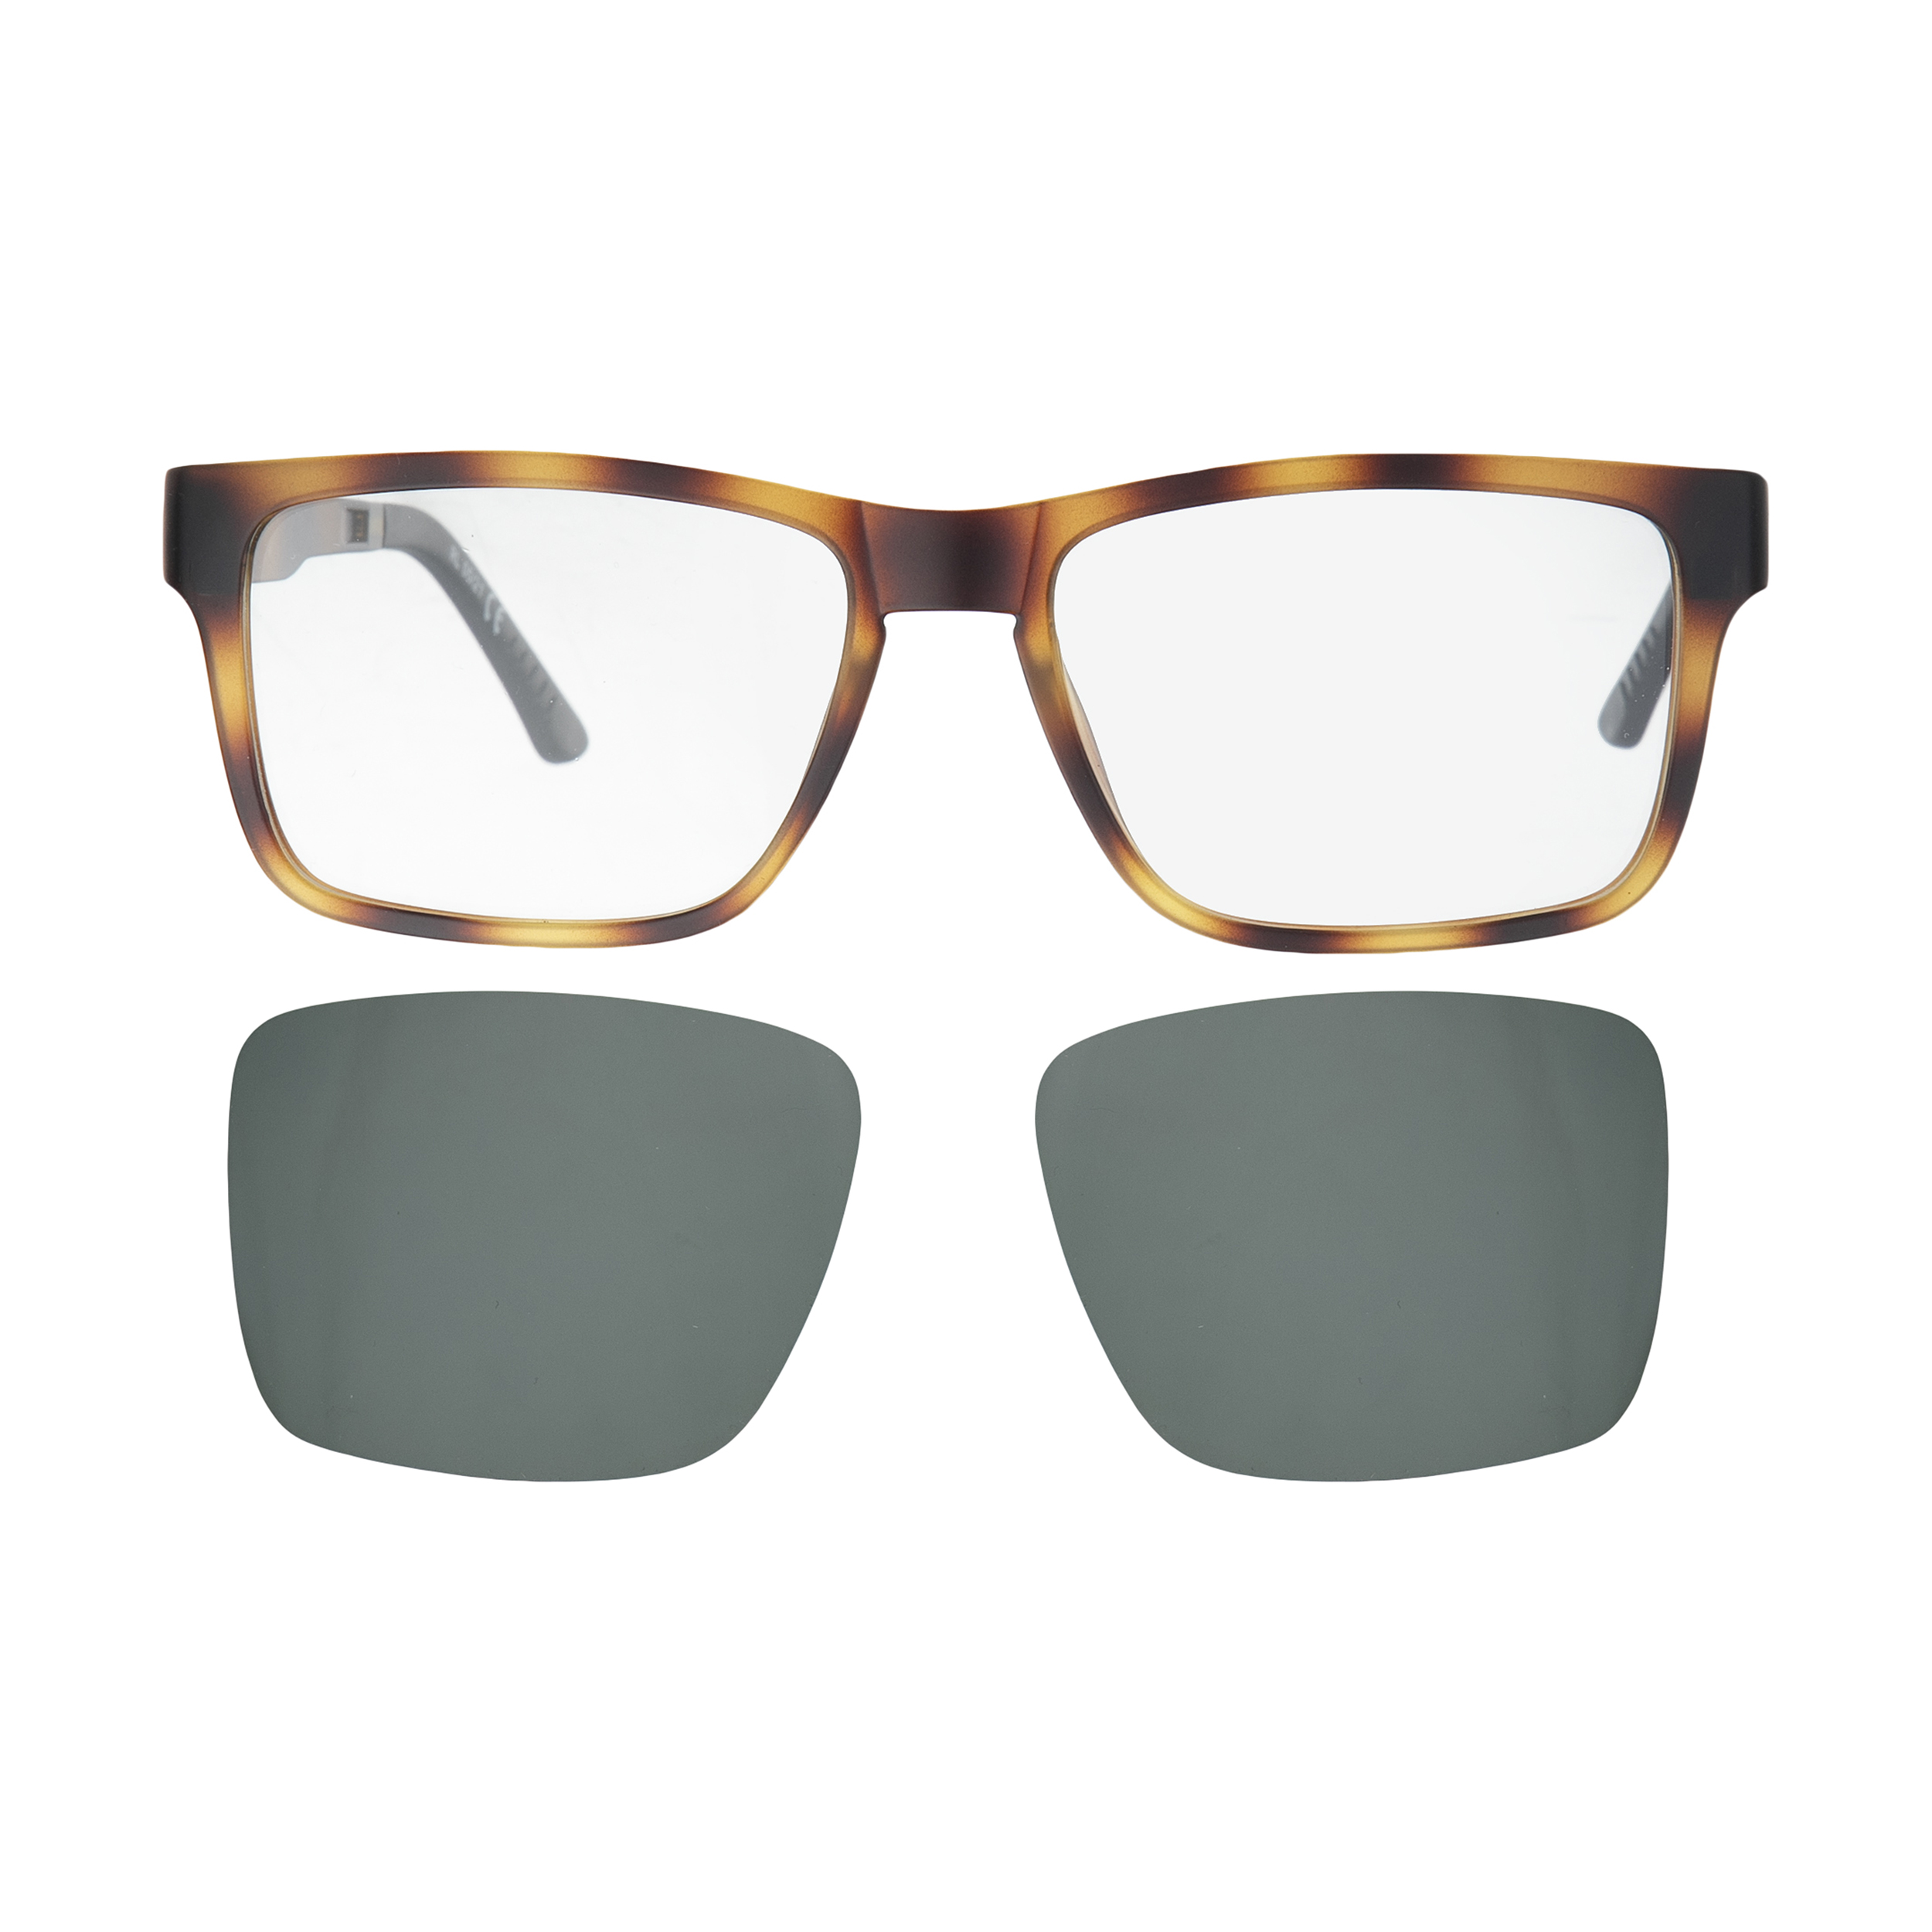 فریم عینک طبی مردانه لوناتو مدل 70151m c07 به همراه کاور عینک آفتابی